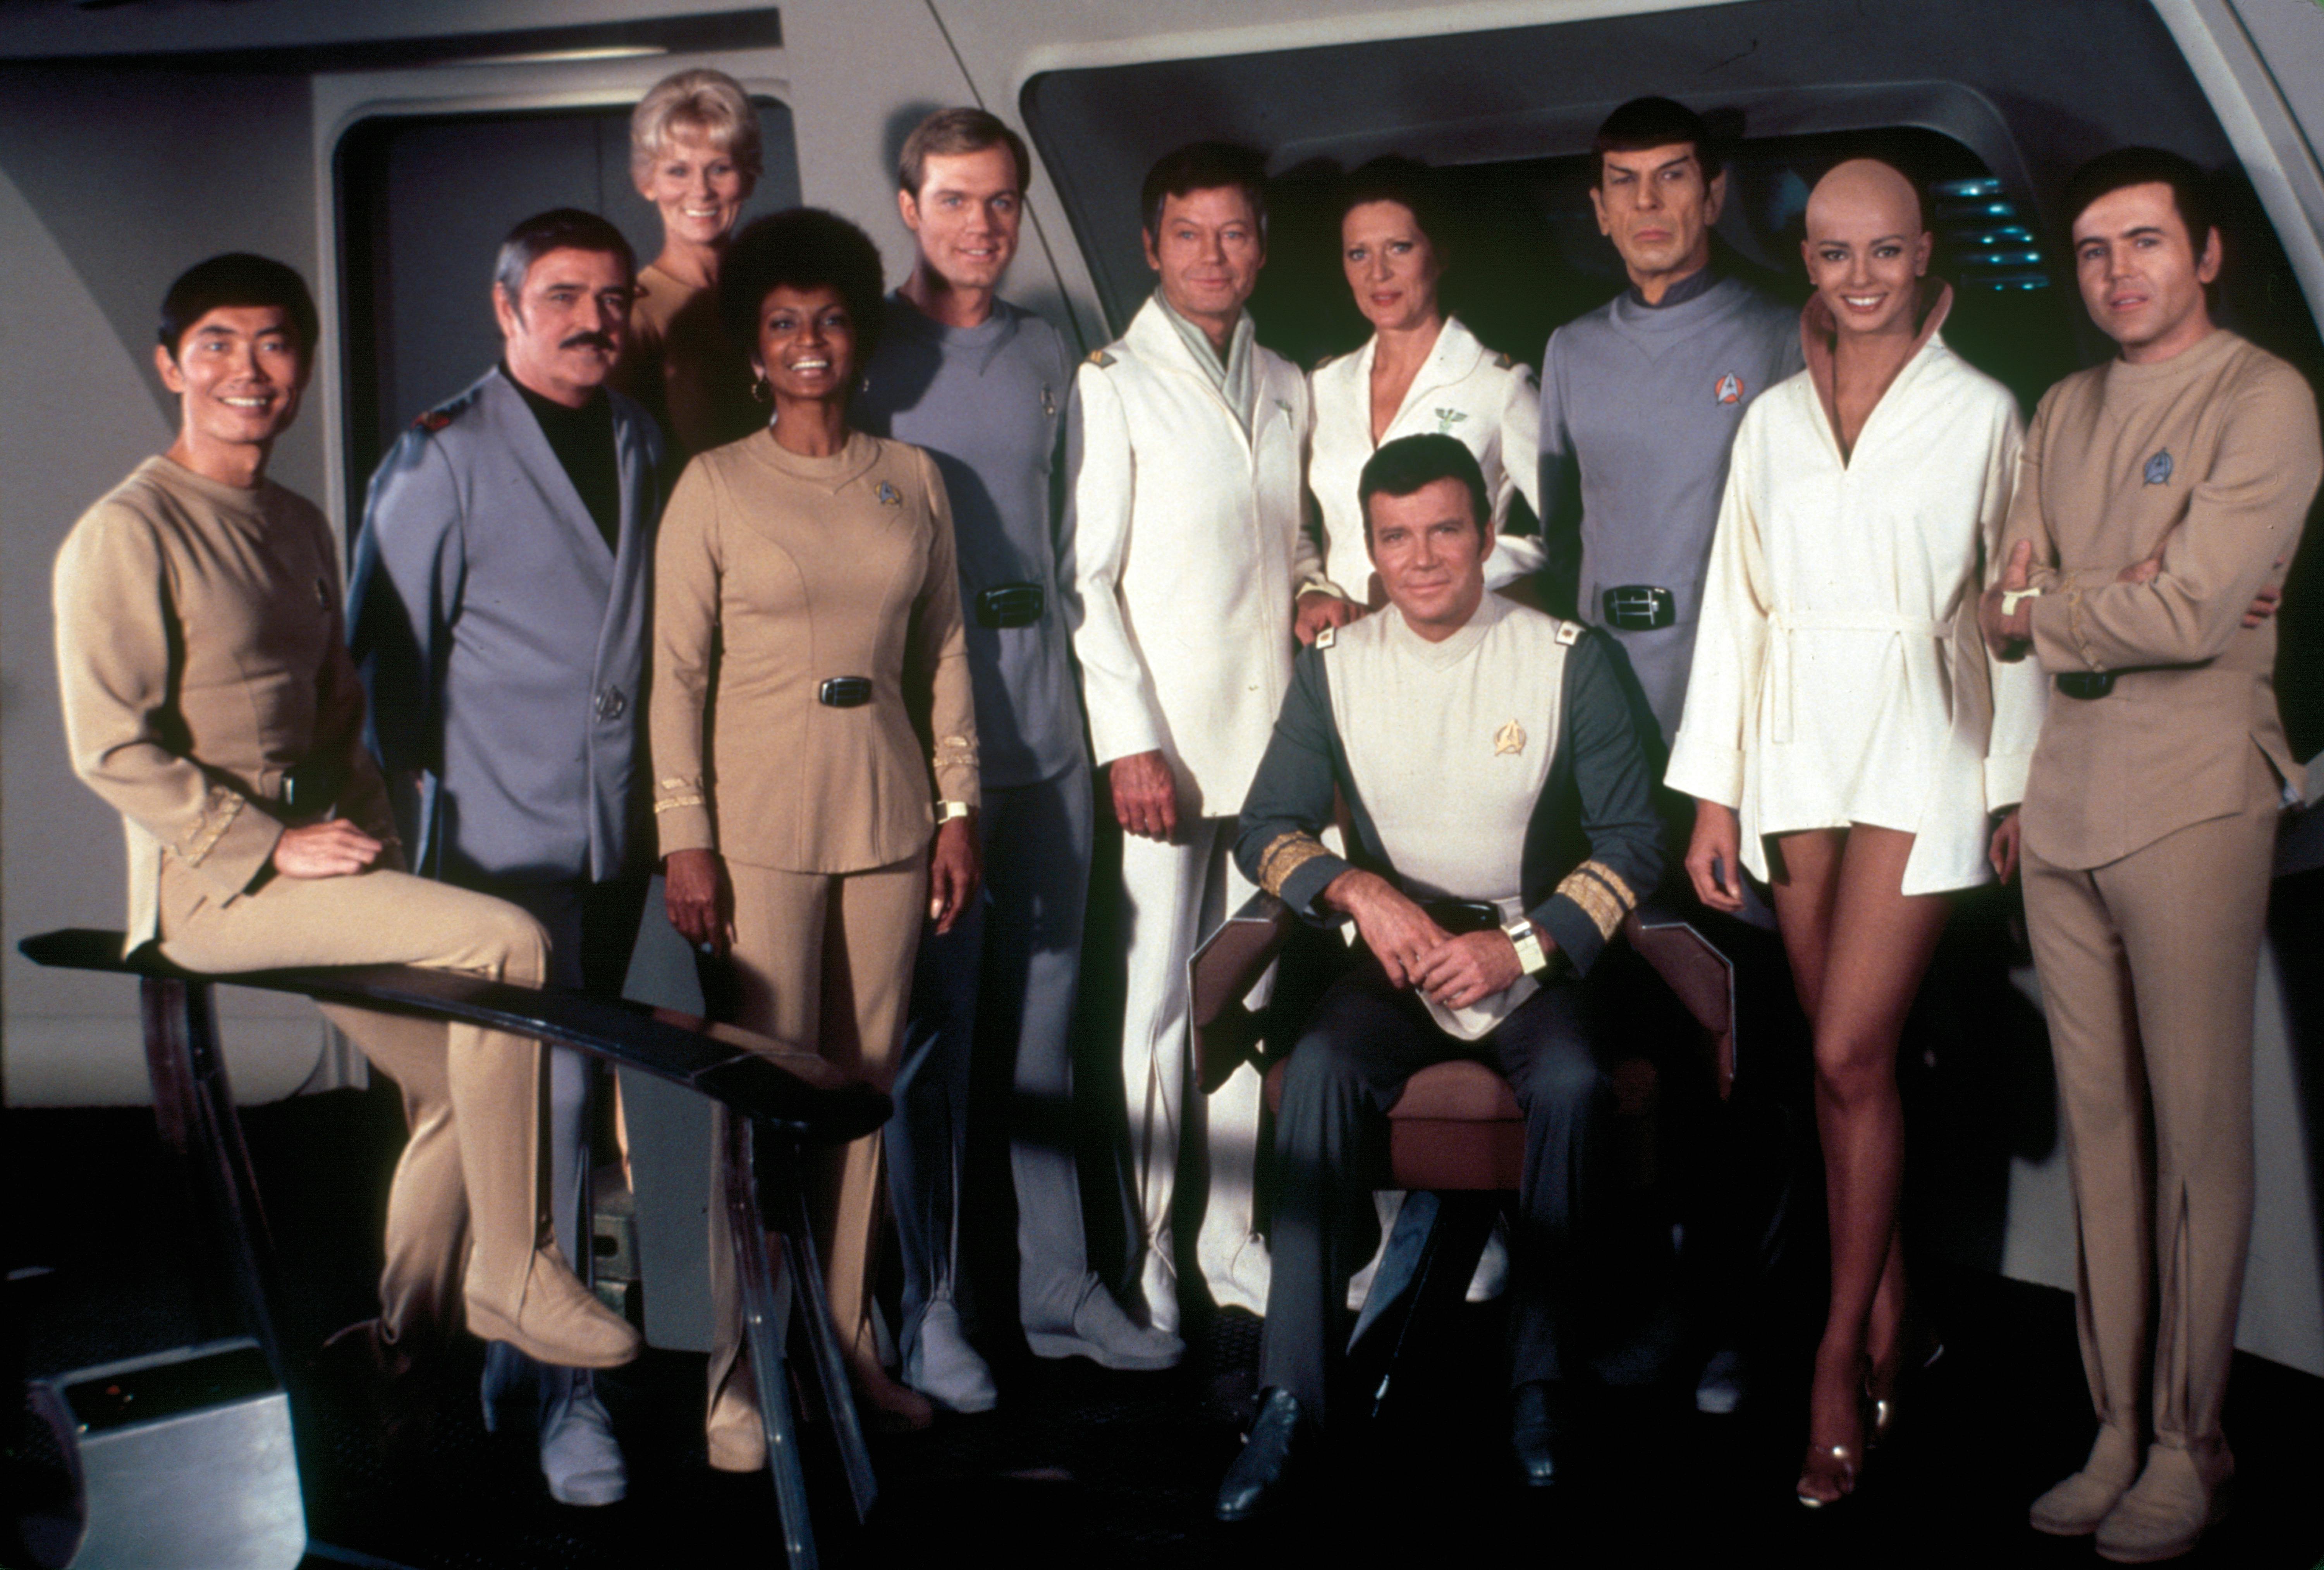 Publicity cast photo of Star Trek: The Motion Picture on the Enterprise bridge set